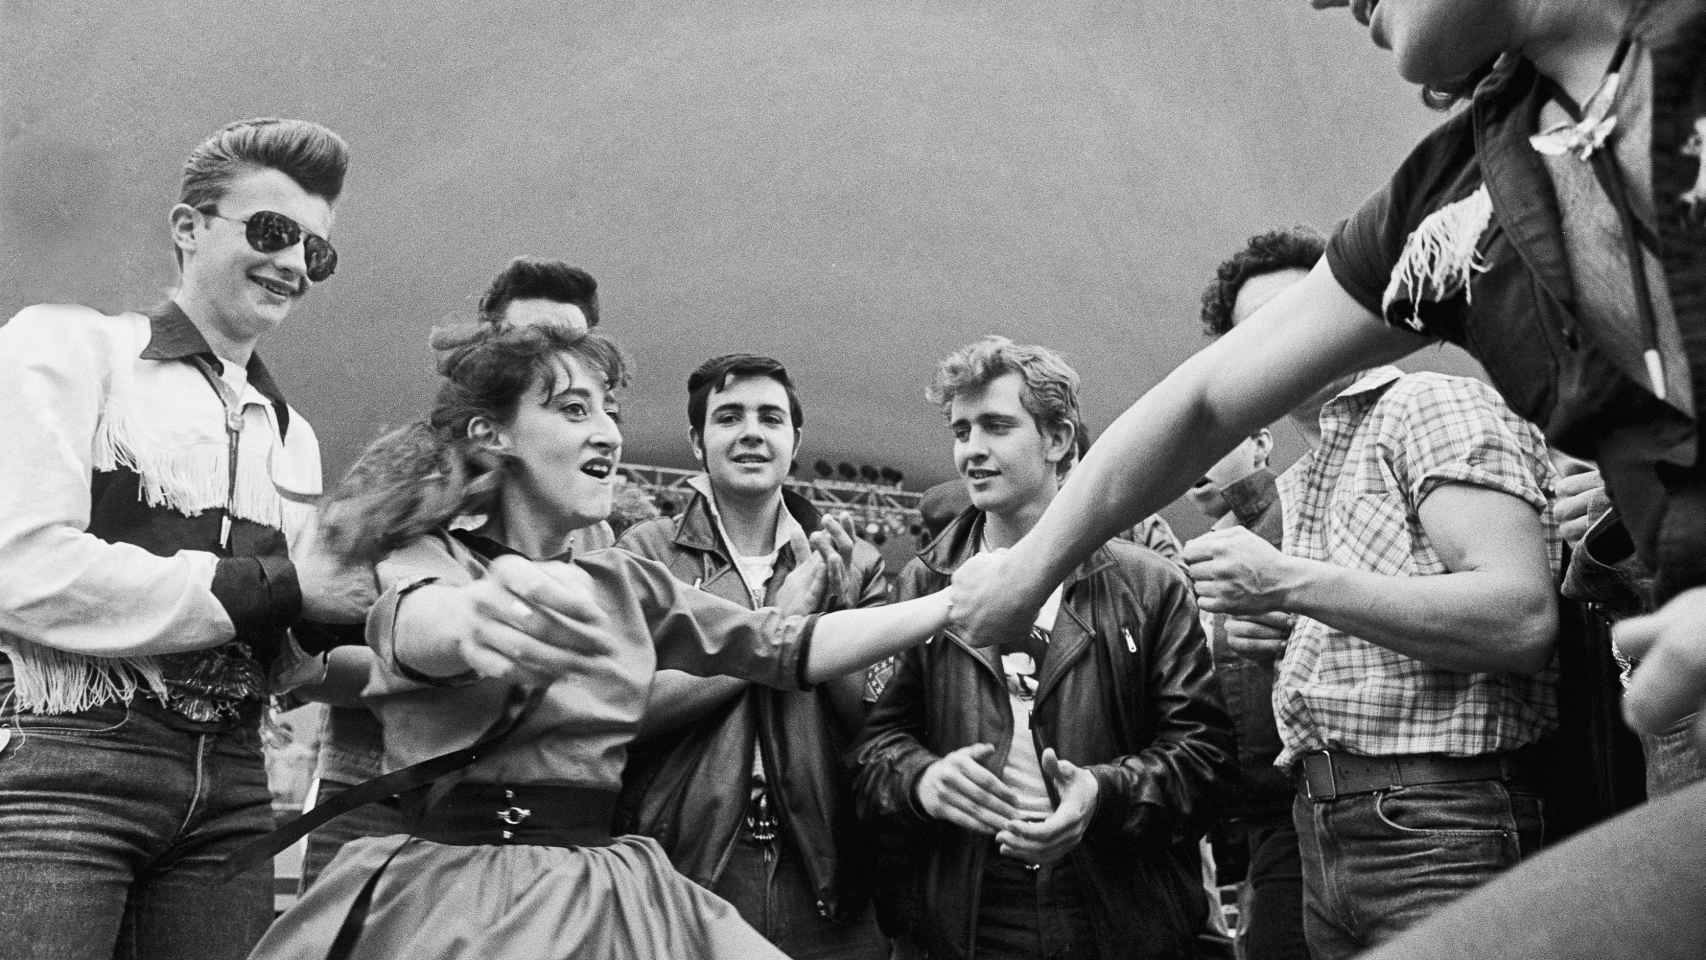 Luis de las Alas: 'Rockers. Madrid, 1985' © Luis de las Alas